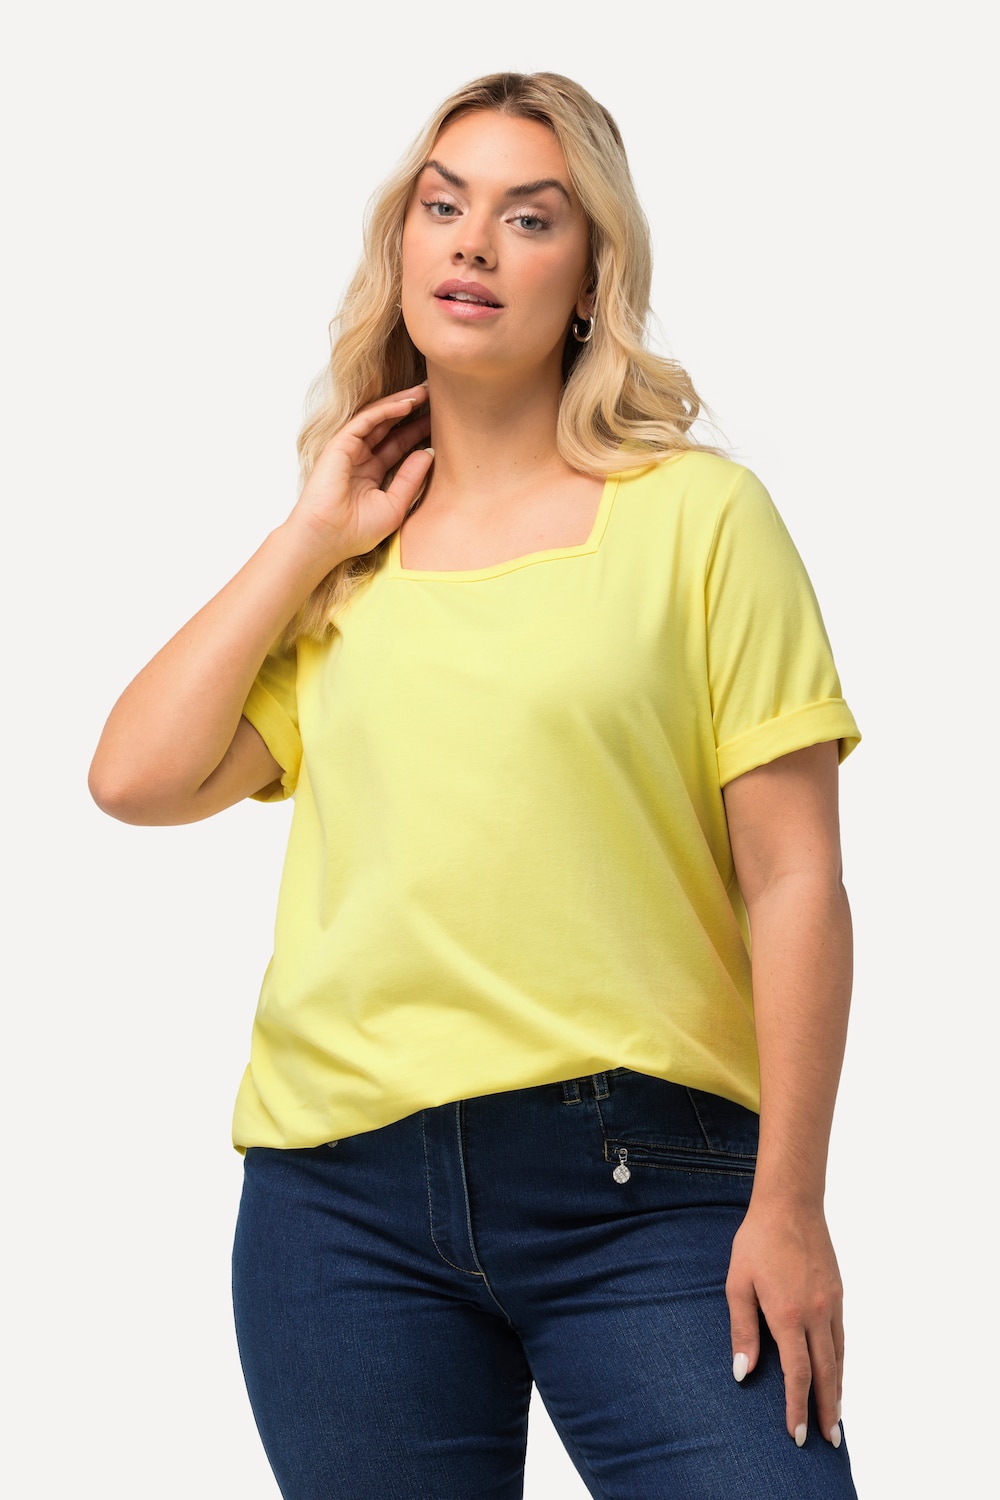 Grote Maten T-shirt, Dames, geel, Maat: 50/52, Katoen, Ulla Popken